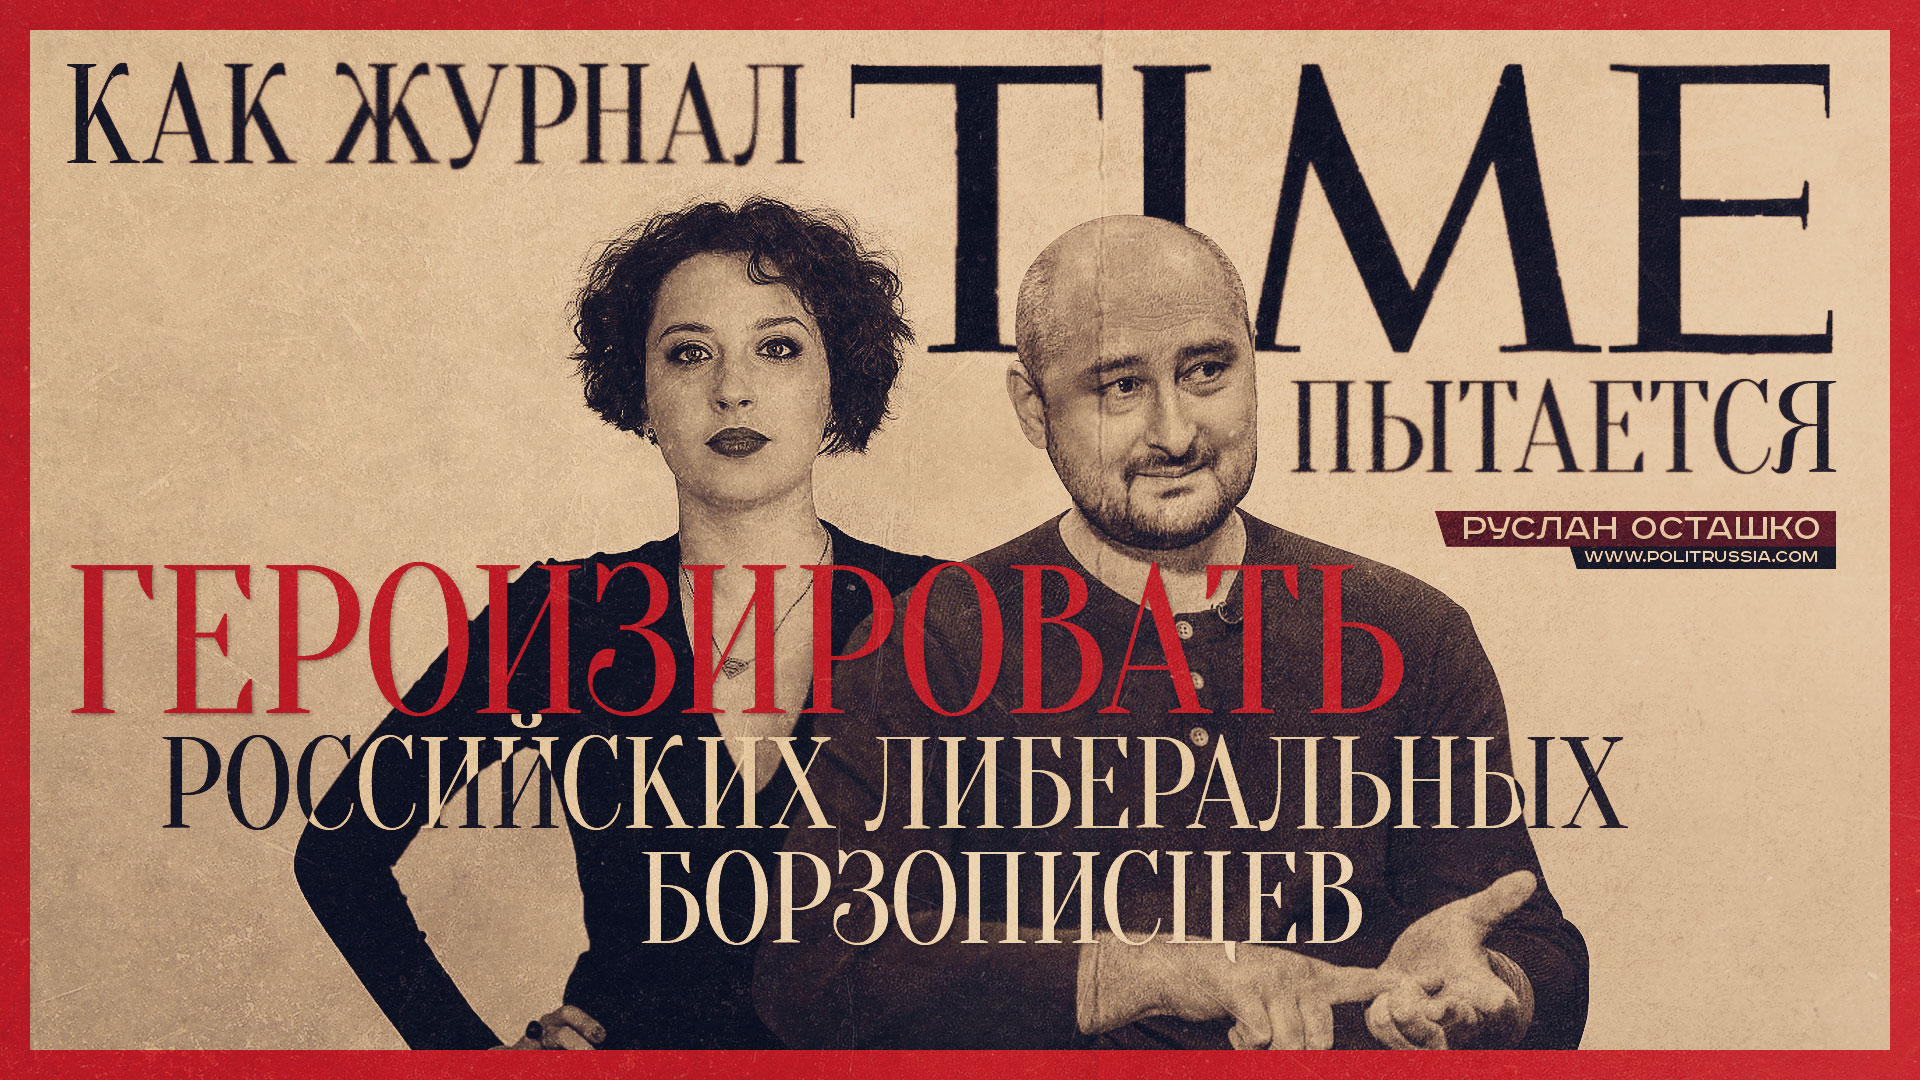 Как журнал Time пытается героизировать российских либеральных борзописцев